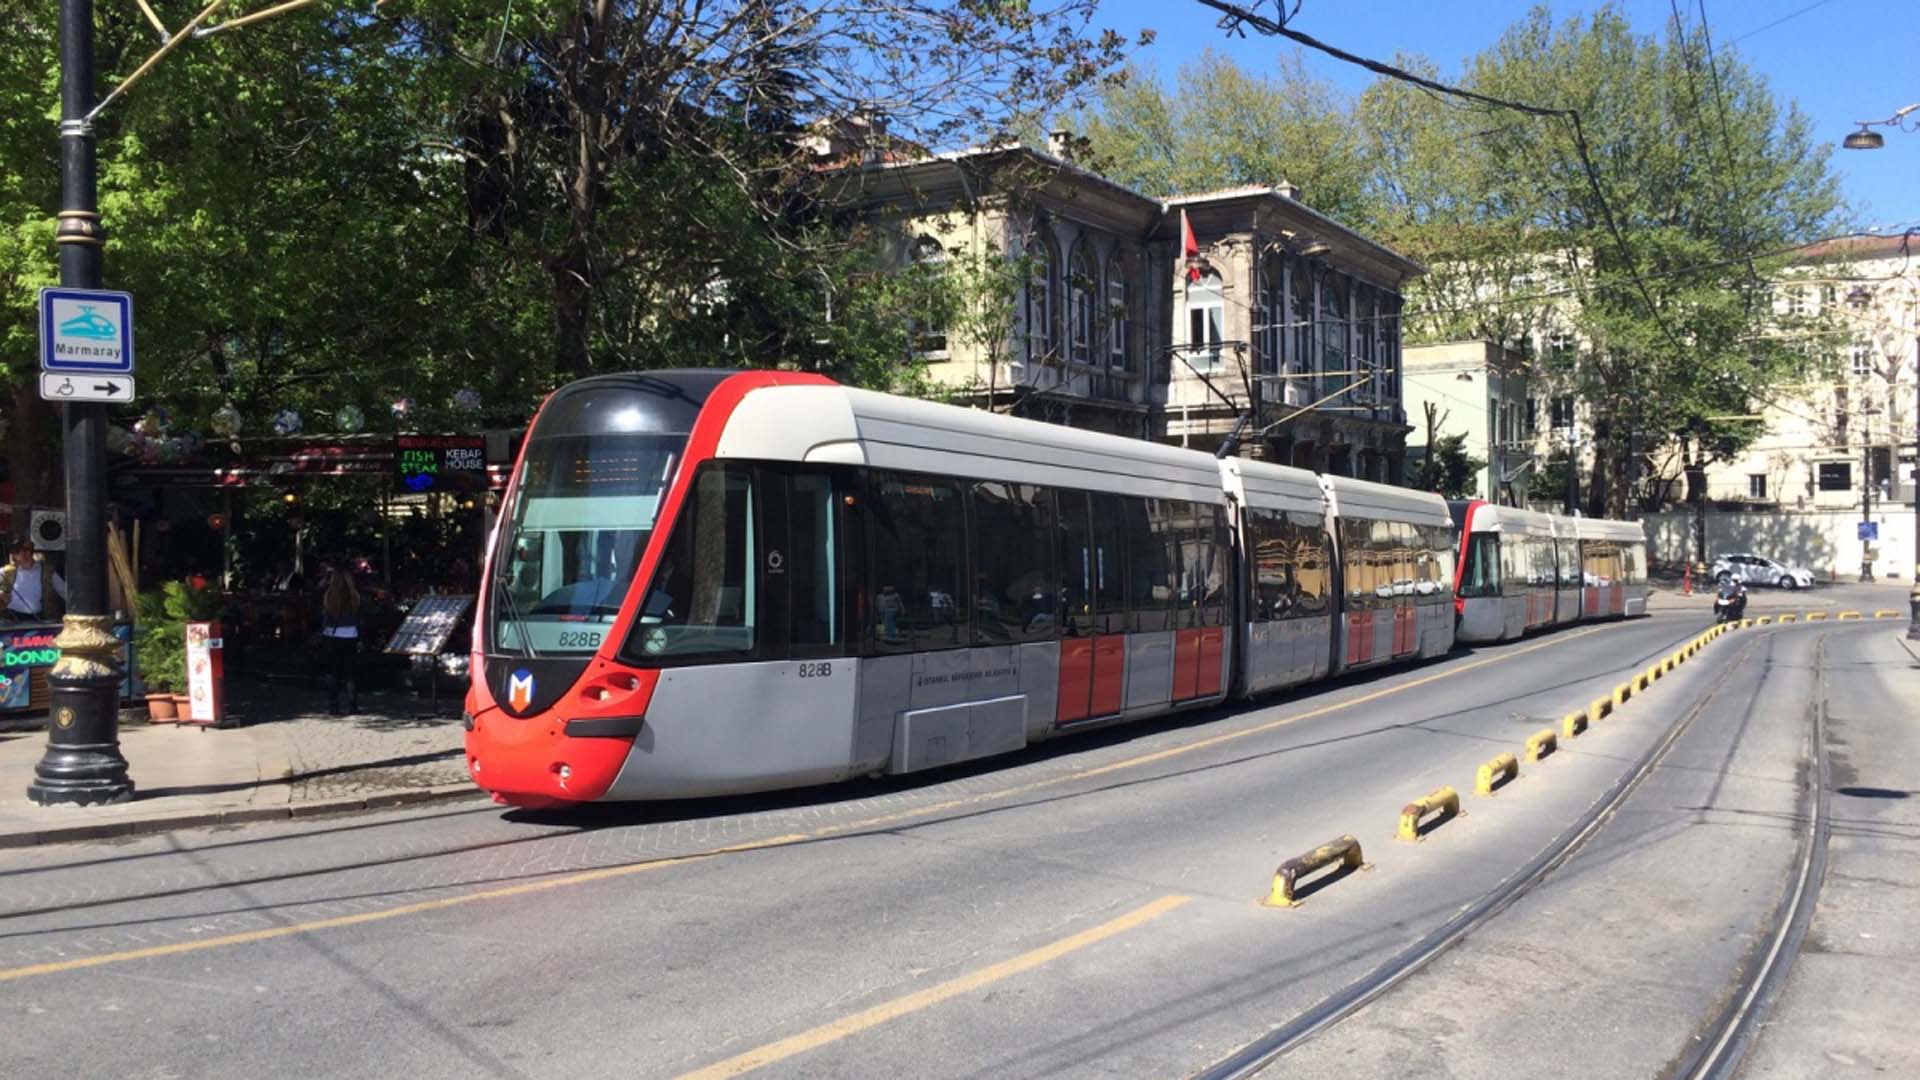 İstanbul metro kaça kadar açık 10-11-12-13-14 Mart 2022? | İstanbul metro, füniküler ve tramvay seferleri kaça kadar açık 10- 14 Mart 2022?